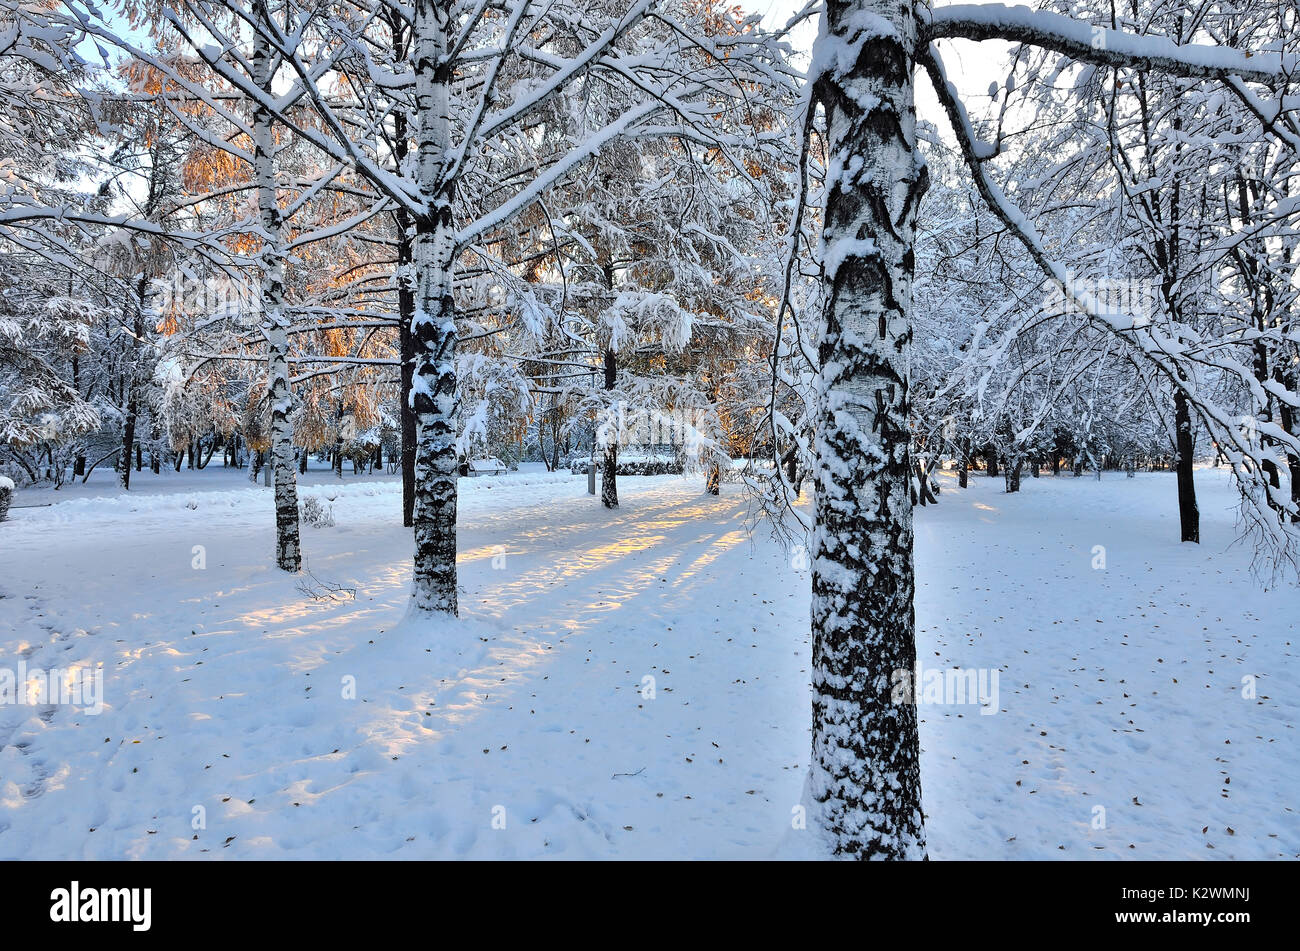 La neige a couvert les troncs de bouleaux blancs et de rayons d'or du soleil couchant en hiver city park - beauté de la nature d'hiver Banque D'Images